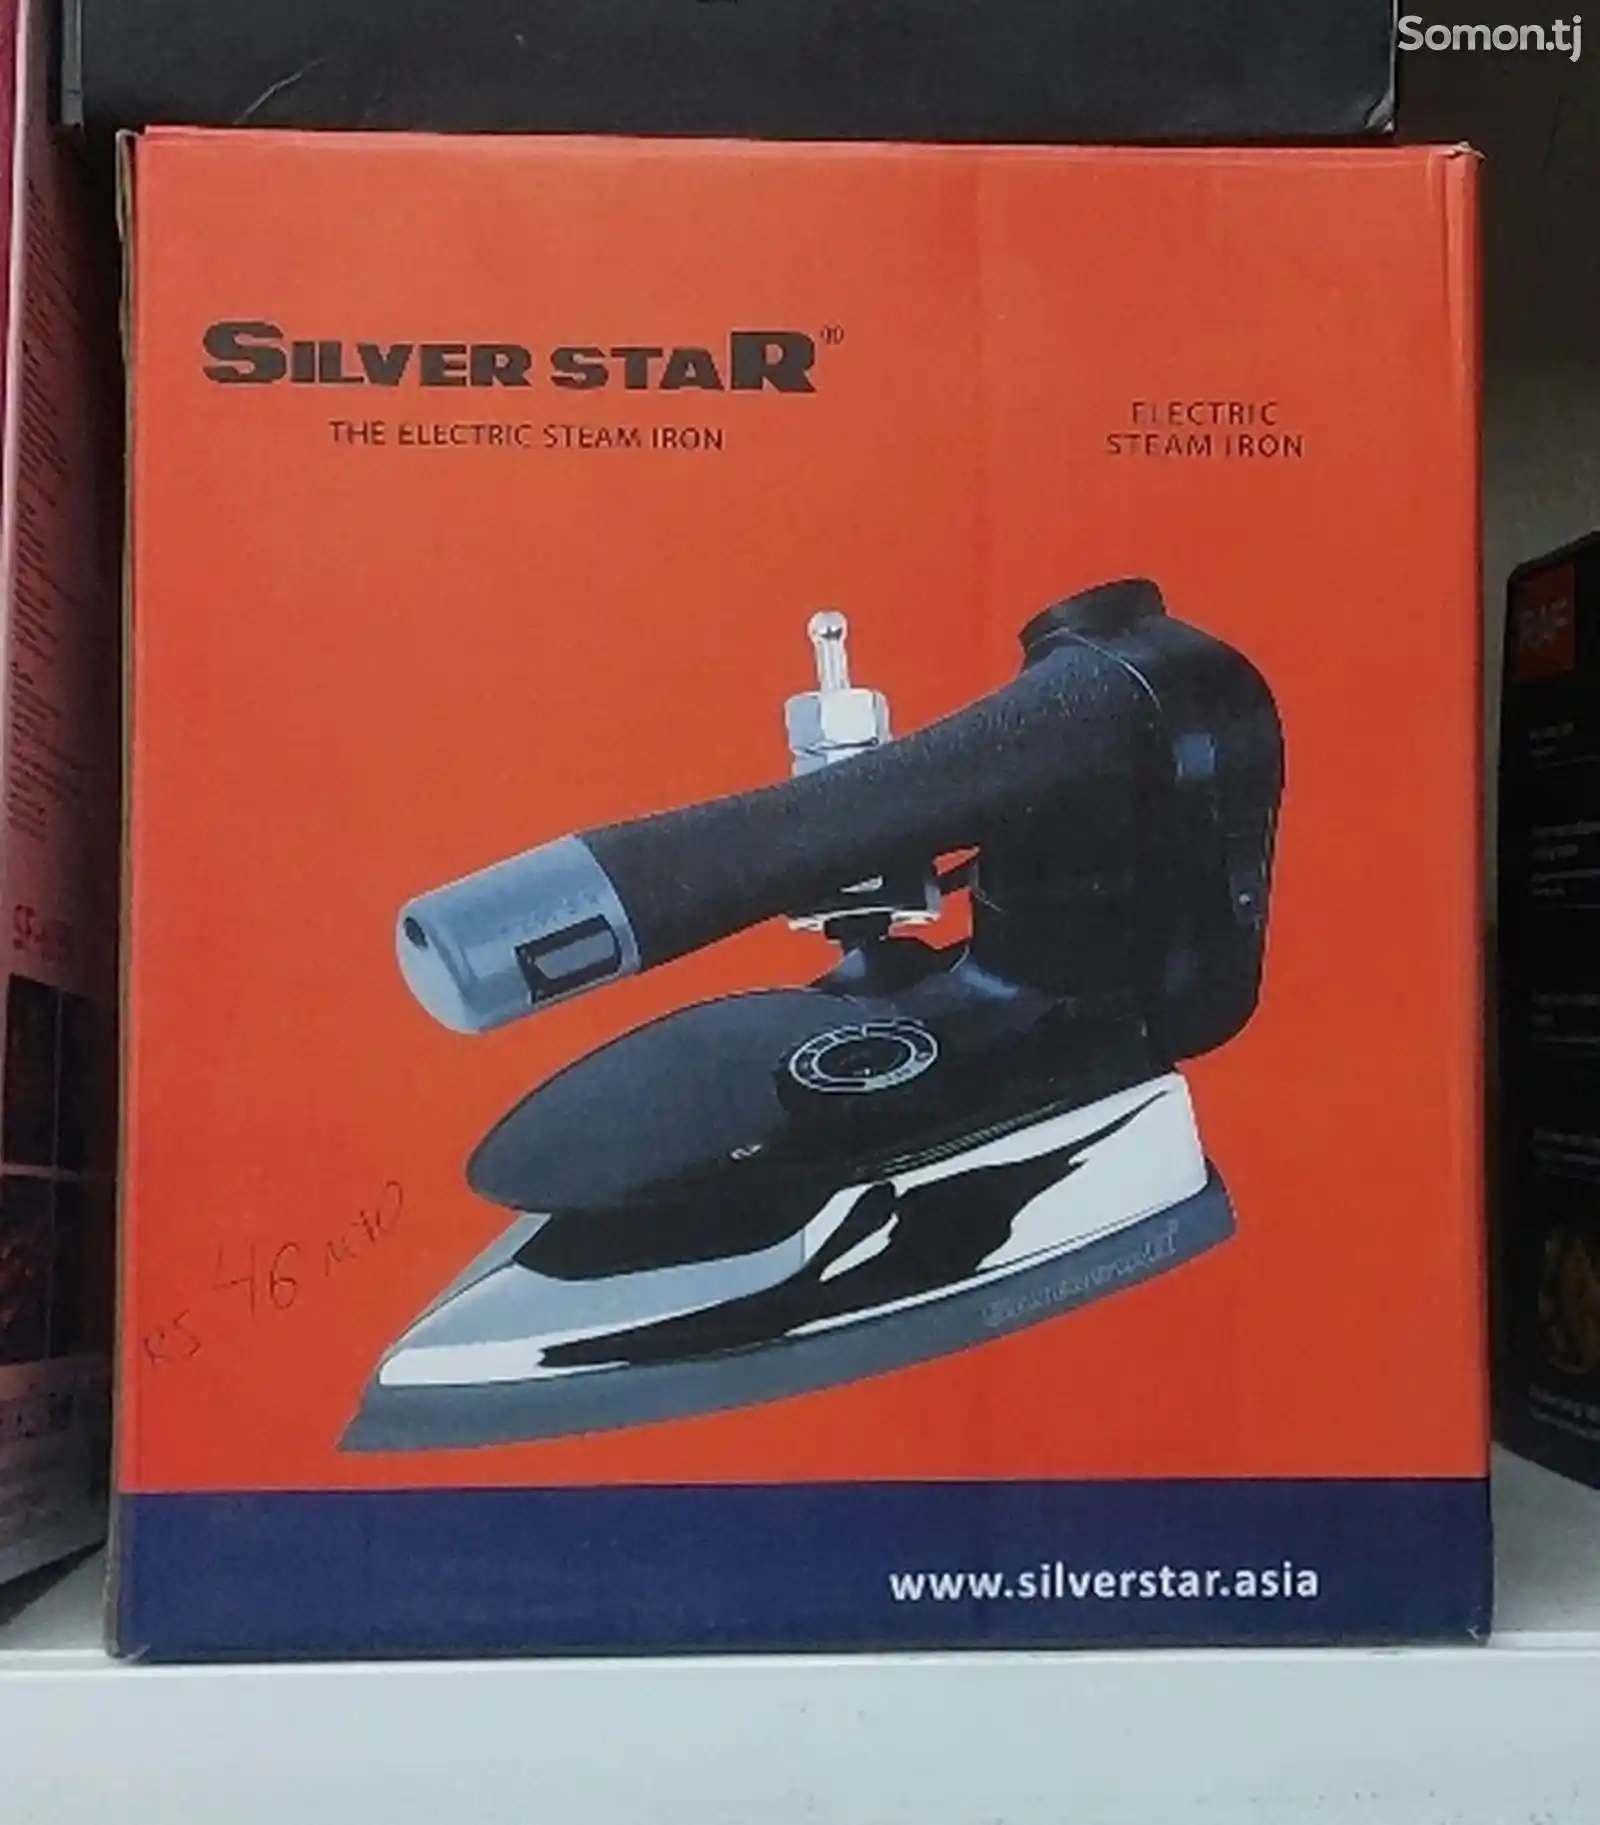 Утюг Silver star-1